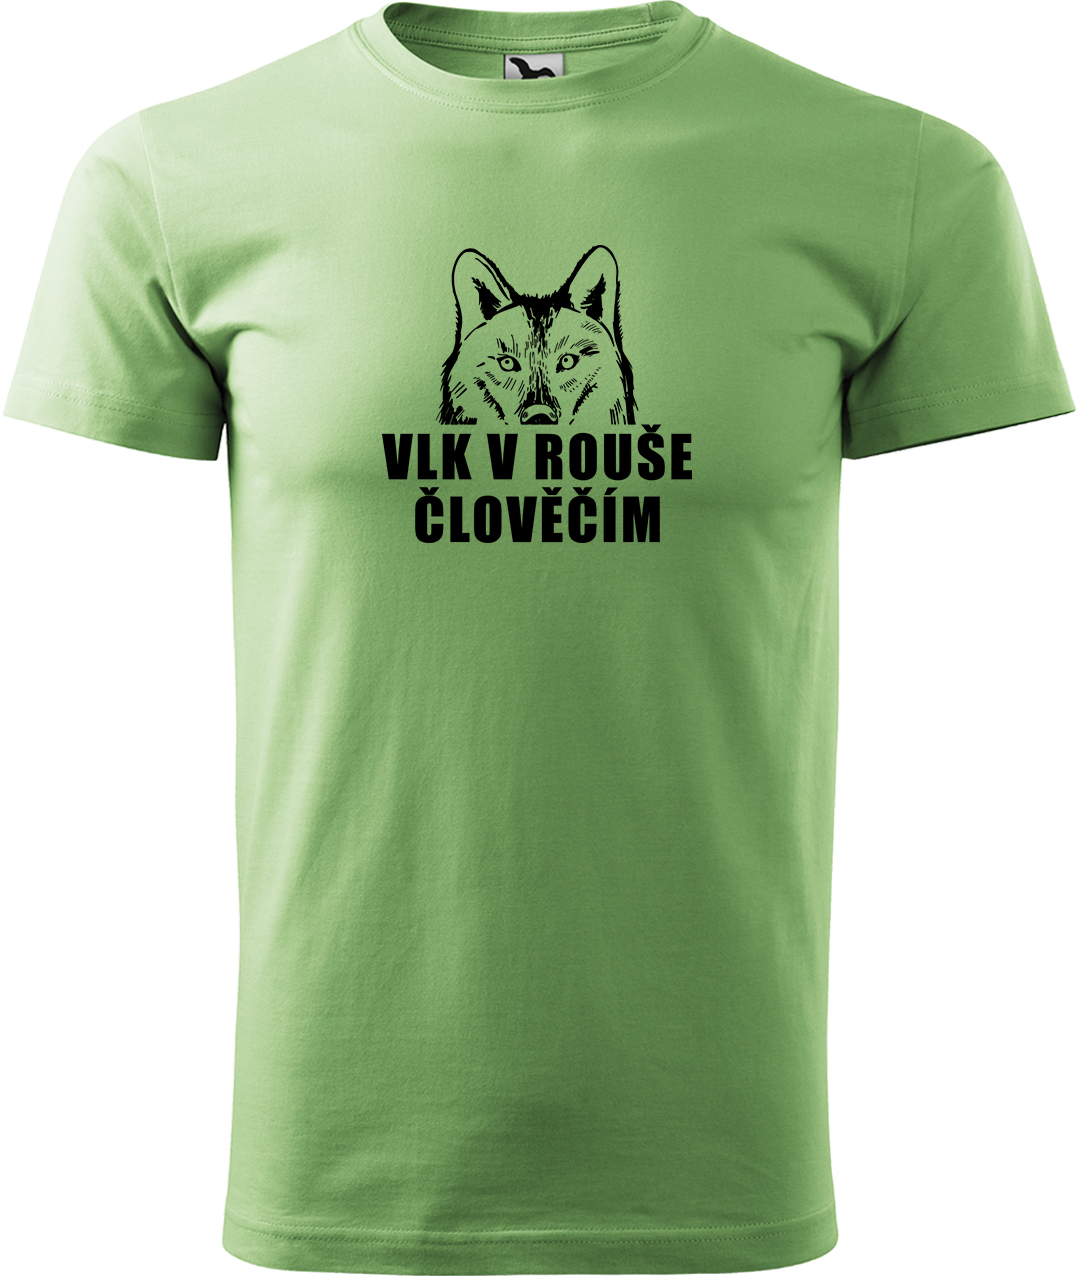 Pánské tričko s vlkem - Vlk v rouše člověčím Velikost: S, Barva: Trávově zelená (39), Střih: pánský